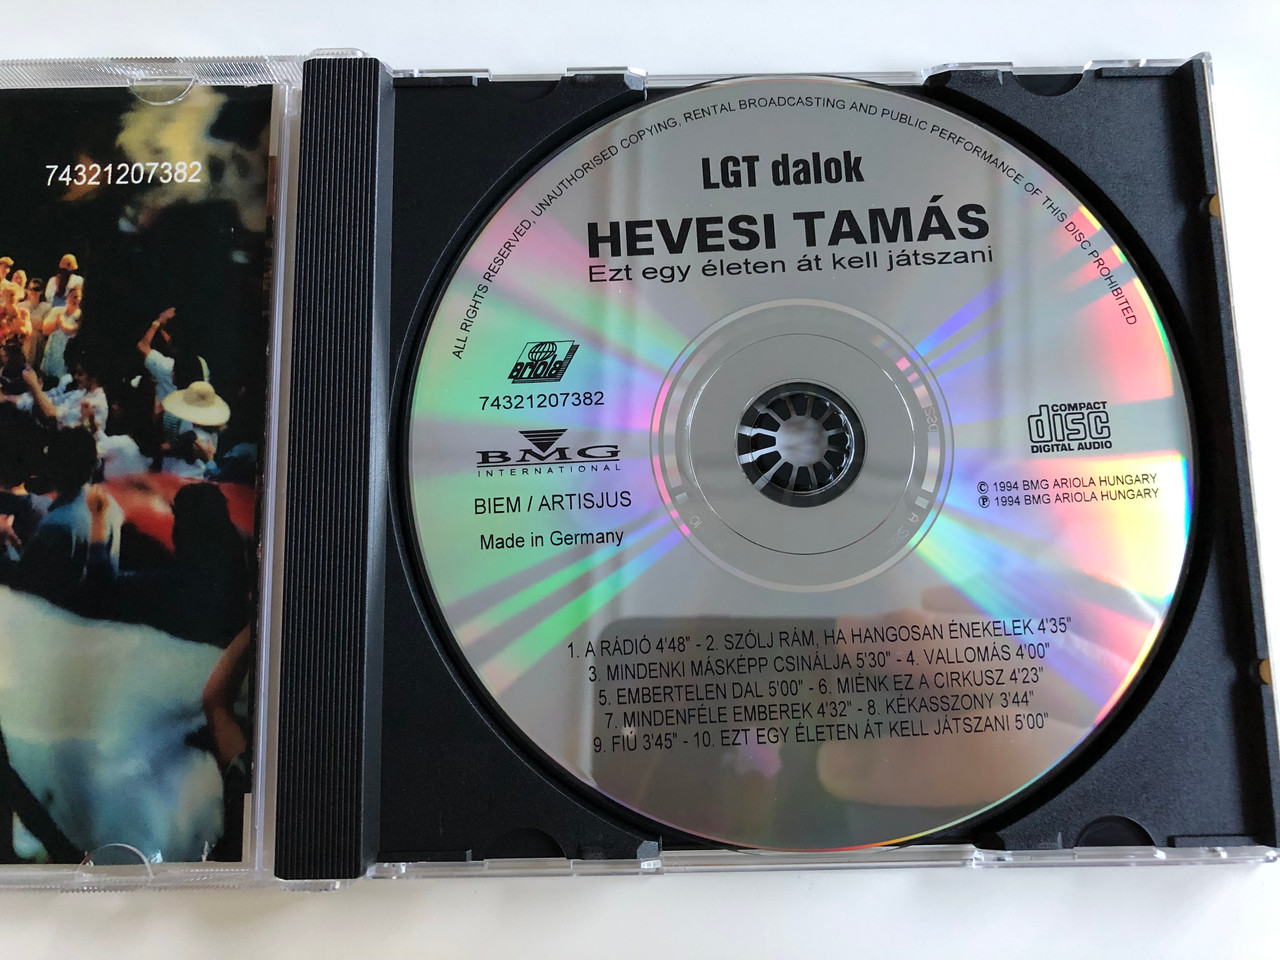 Hevesi Tamás - ezt egy életen át kell játszani / LGT dalok / Audio CD 1994  / BMG Ariola Hungary - bibleinmylanguage